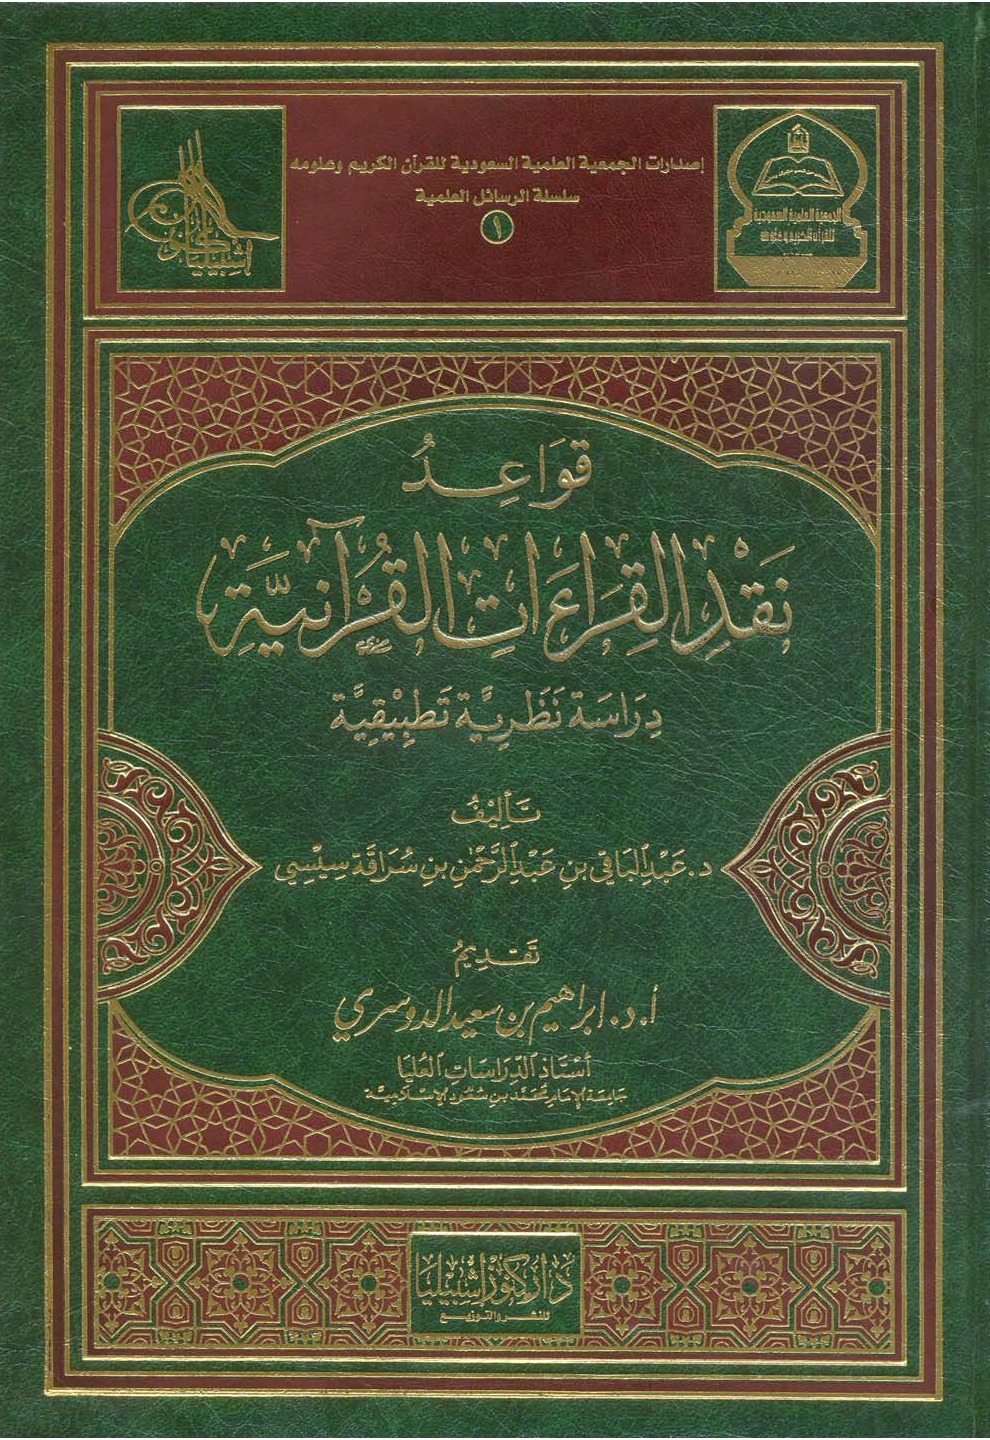 تحميل كتاب قواعد نقد القراءات القرآنية (دراسة نظرية تطبيقية) لـِ: الدكتور عبد الباقي بن عبد الرحمن بن سراقة سيسي